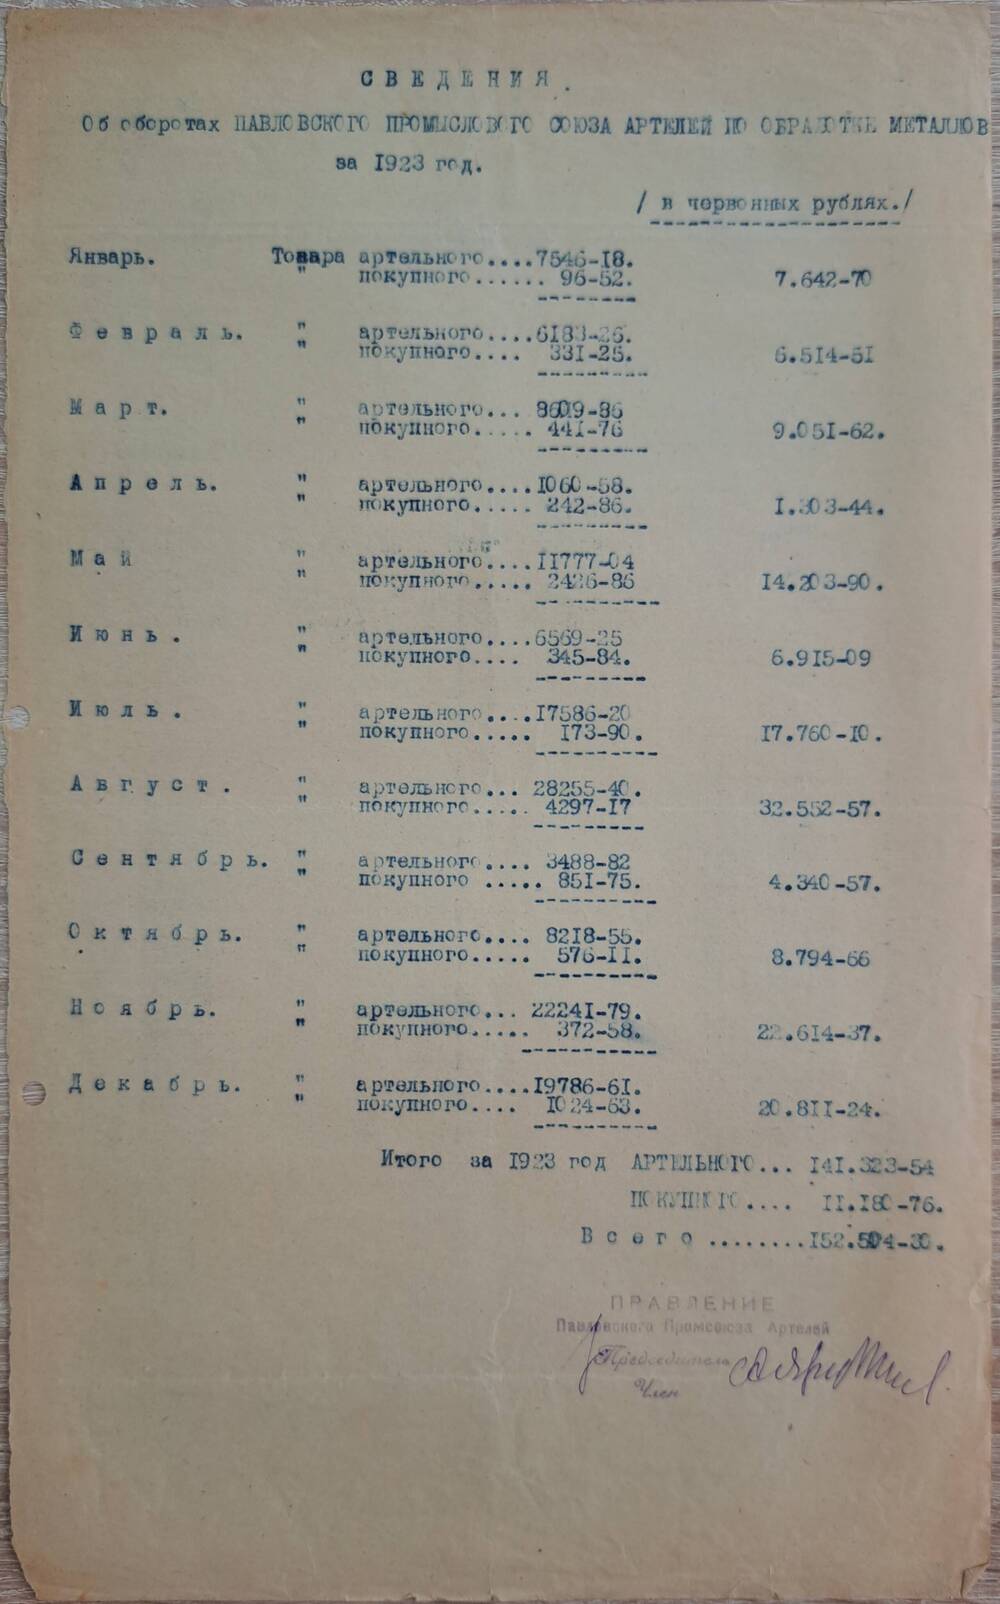 Сведения об оборотах Павловского промыслового союза артелей по обработке металлов за 1923 год.